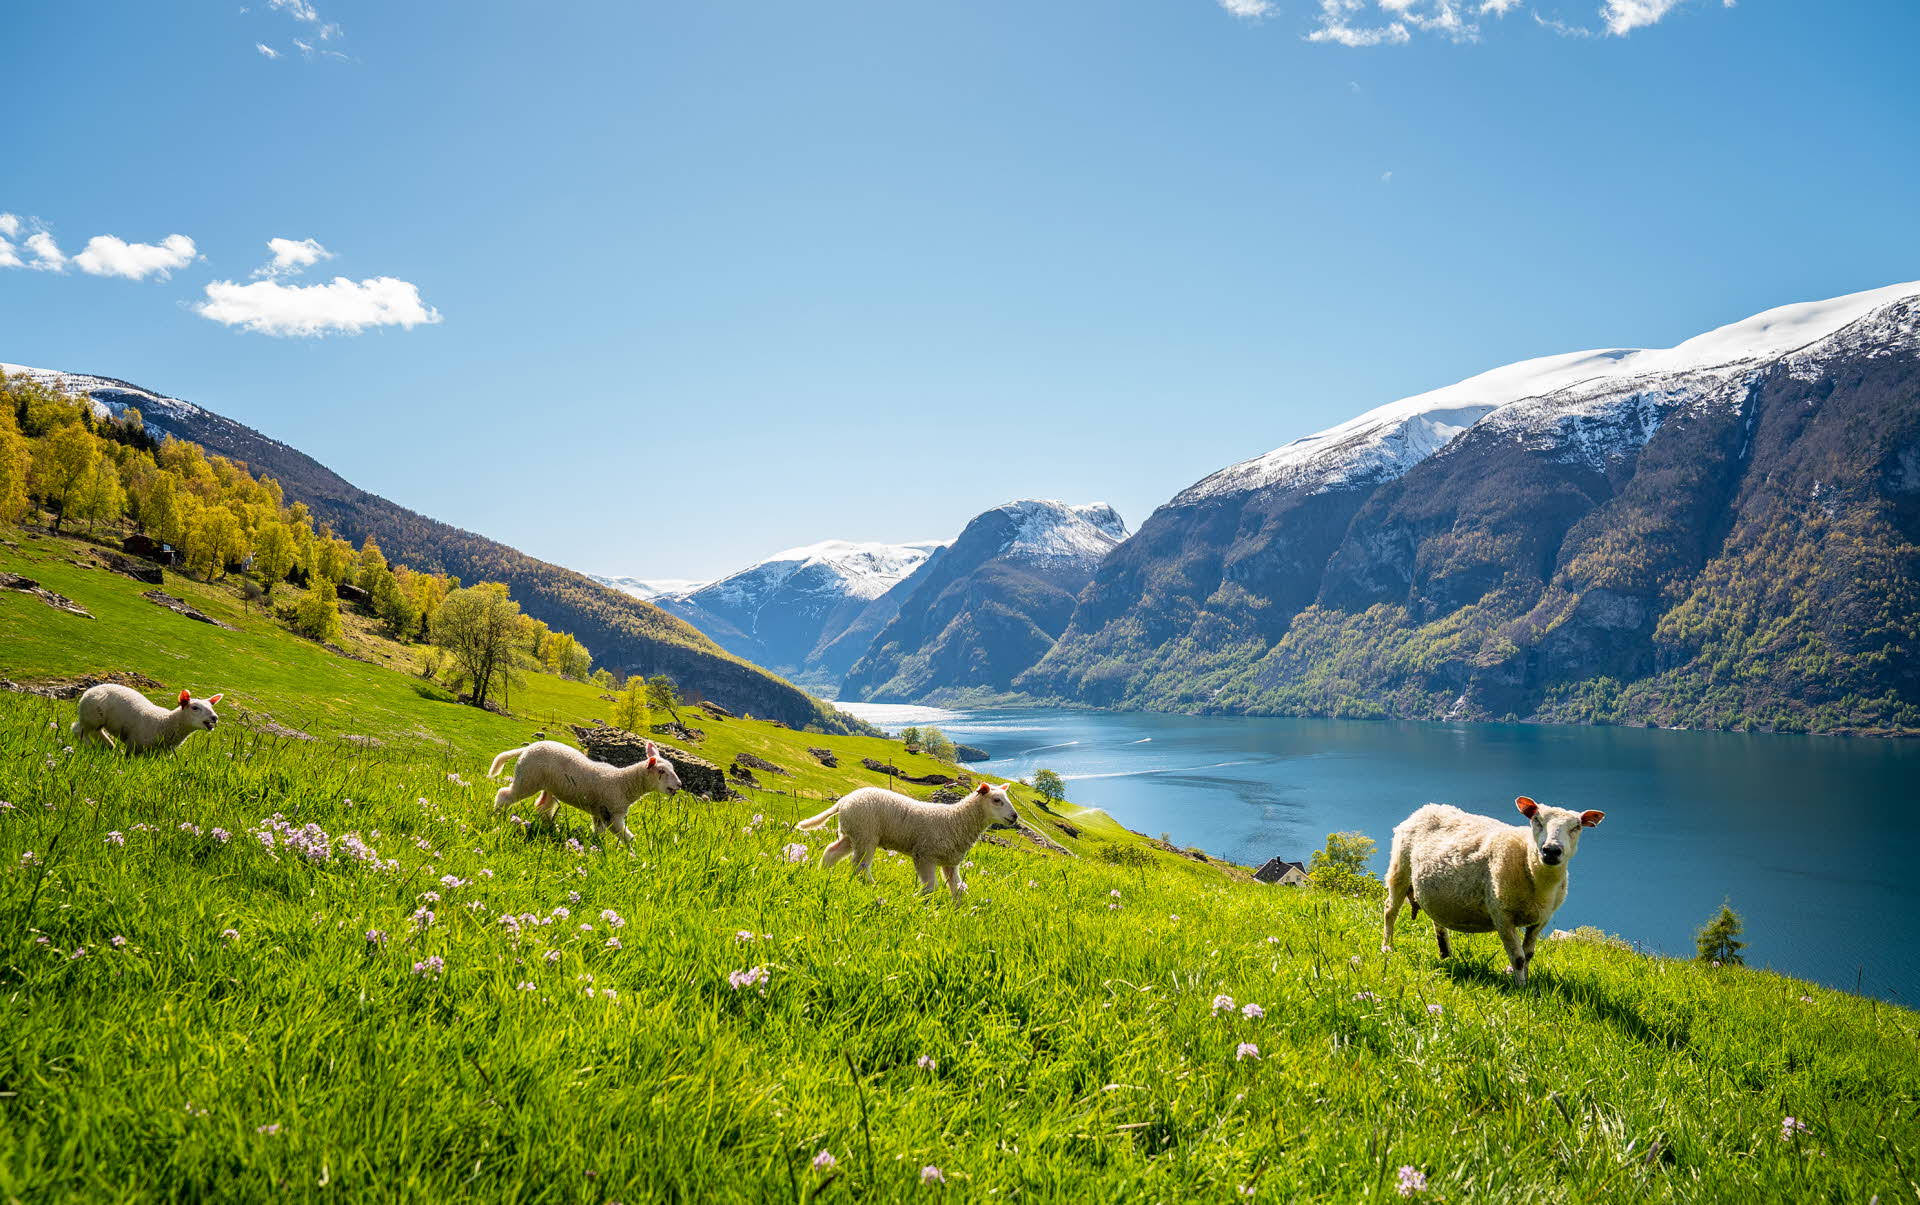 Una oveja pastando en los floridos prados con vistas a Aurlandsfjord, Patrimonio de la Humanidad, con los picos de las montañas cubiertos de nieve